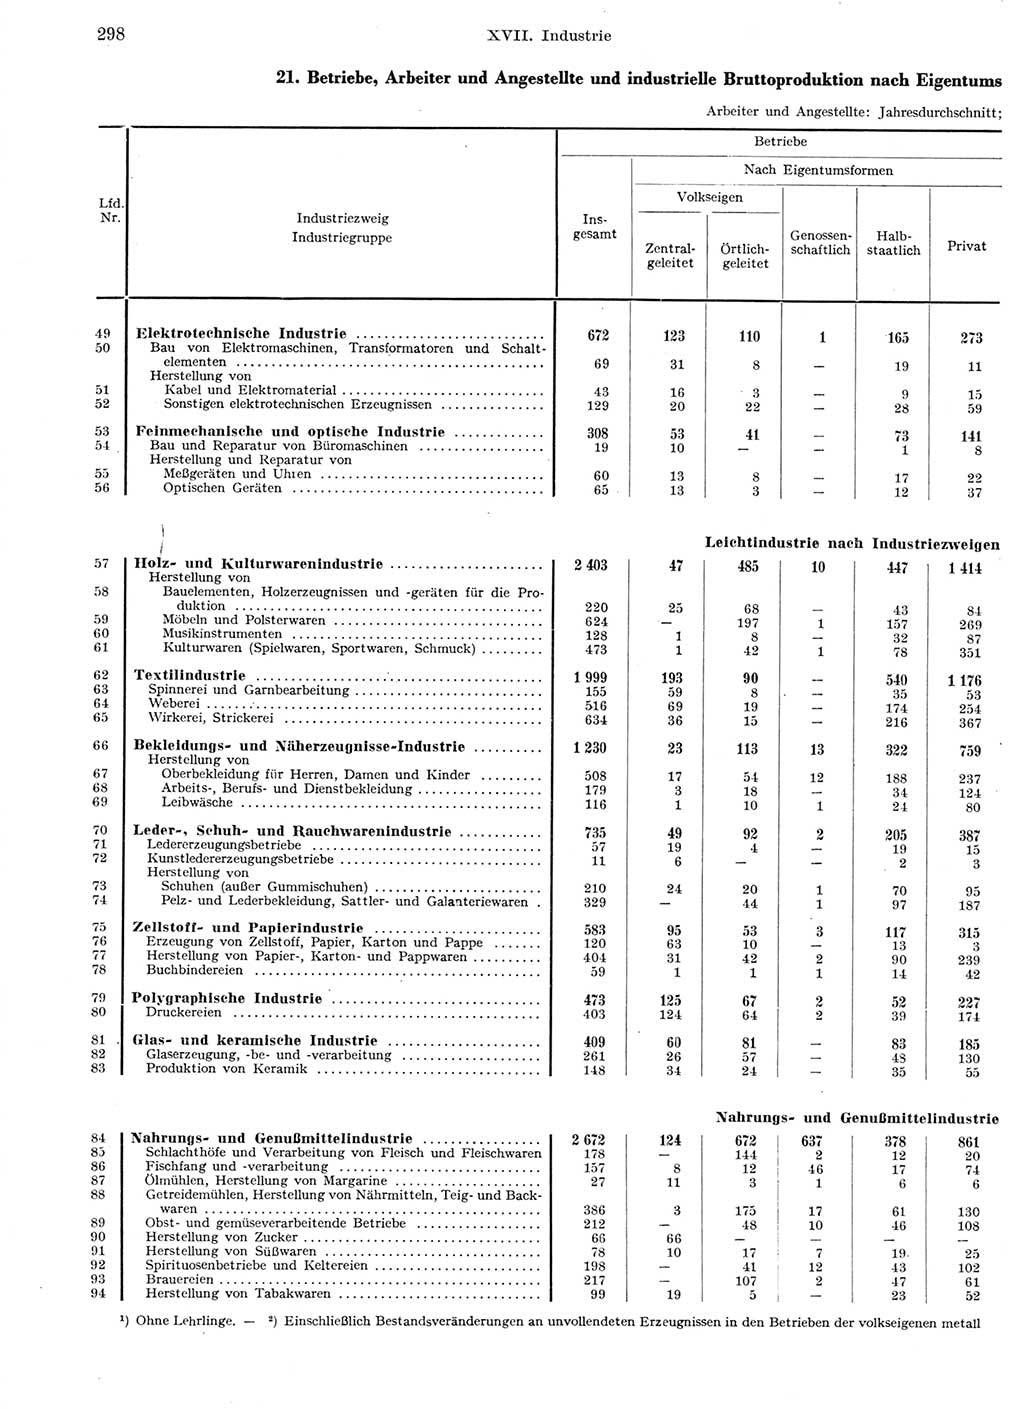 Statistisches Jahrbuch der Deutschen Demokratischen Republik (DDR) 1959, Seite 298 (Stat. Jb. DDR 1959, S. 298)